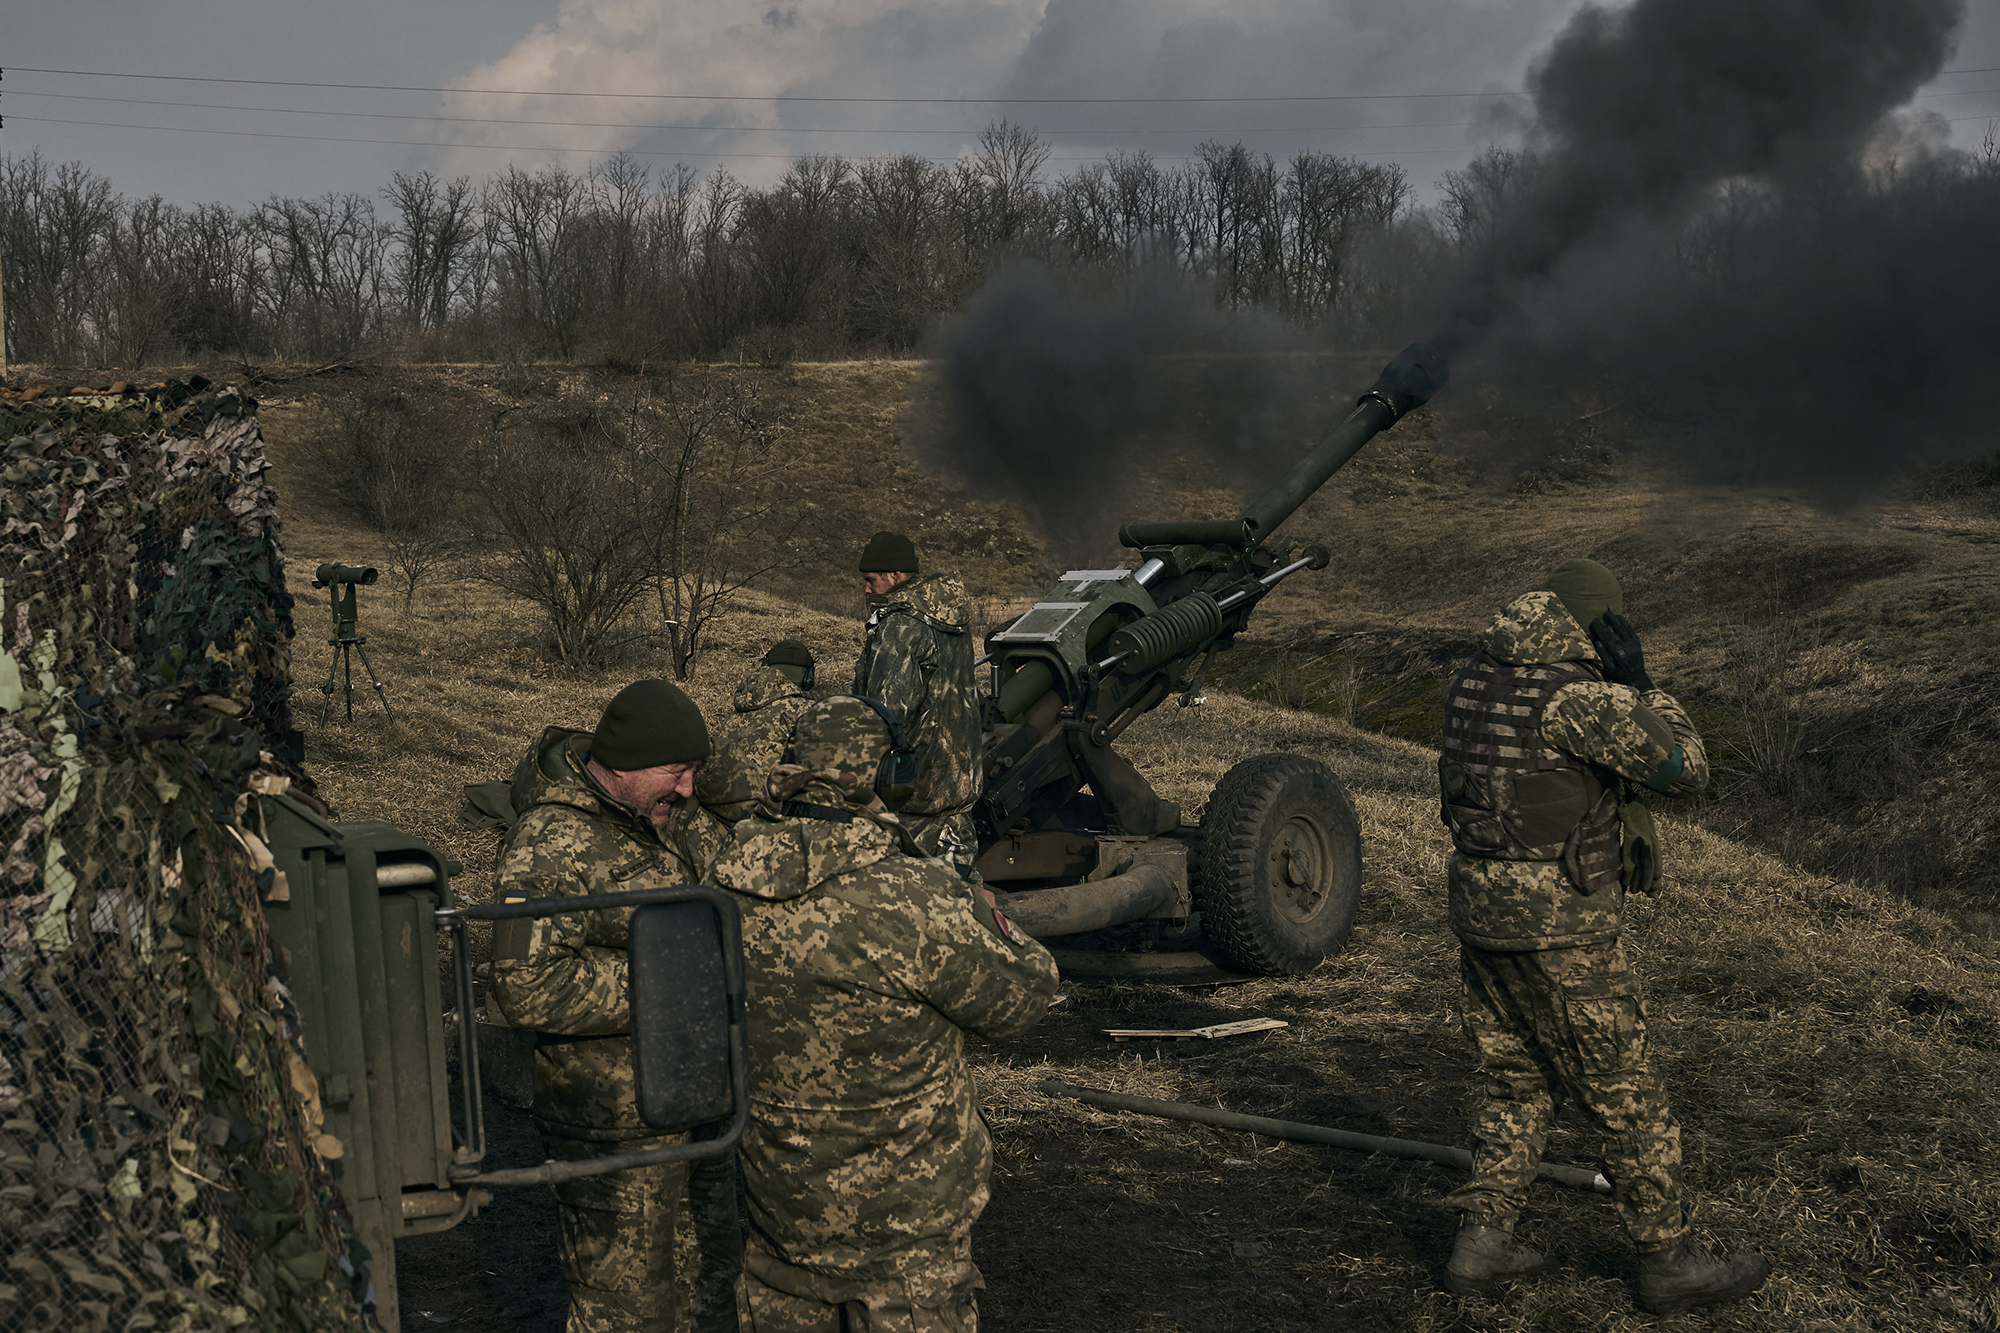 Ukrainian soldiers fire a self-propelled howitzer towards Russian positions near Bakhmut, Ukraine, on March 7.